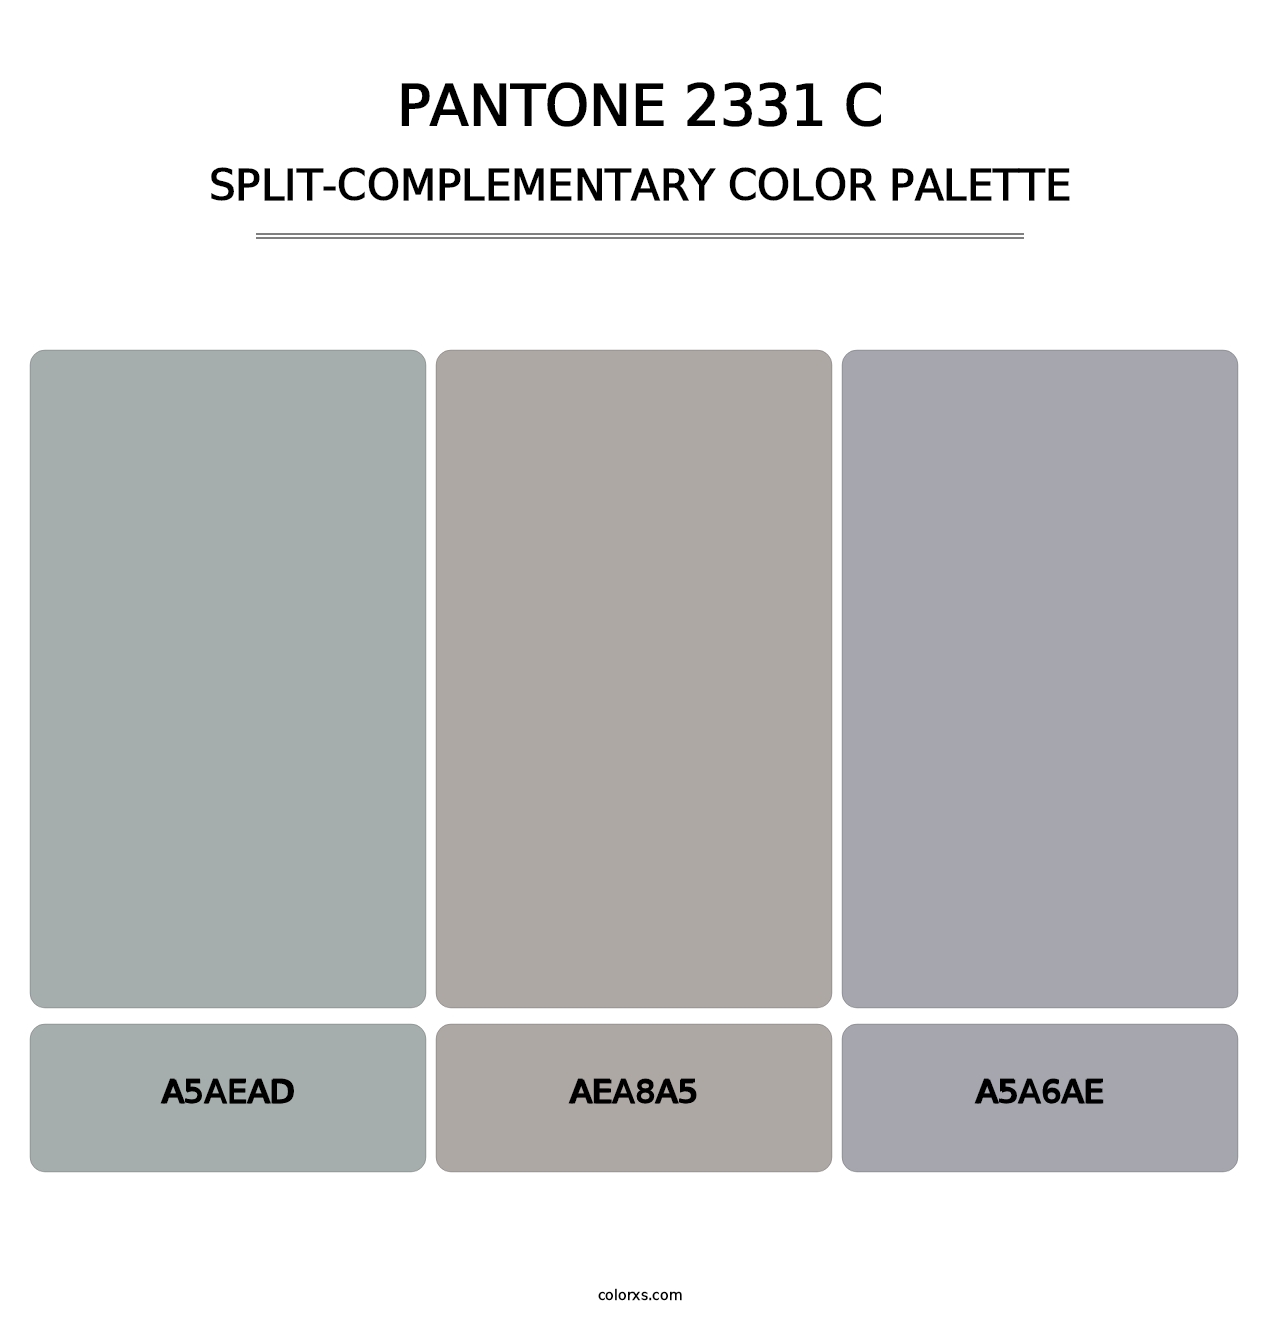 PANTONE 2331 C - Split-Complementary Color Palette